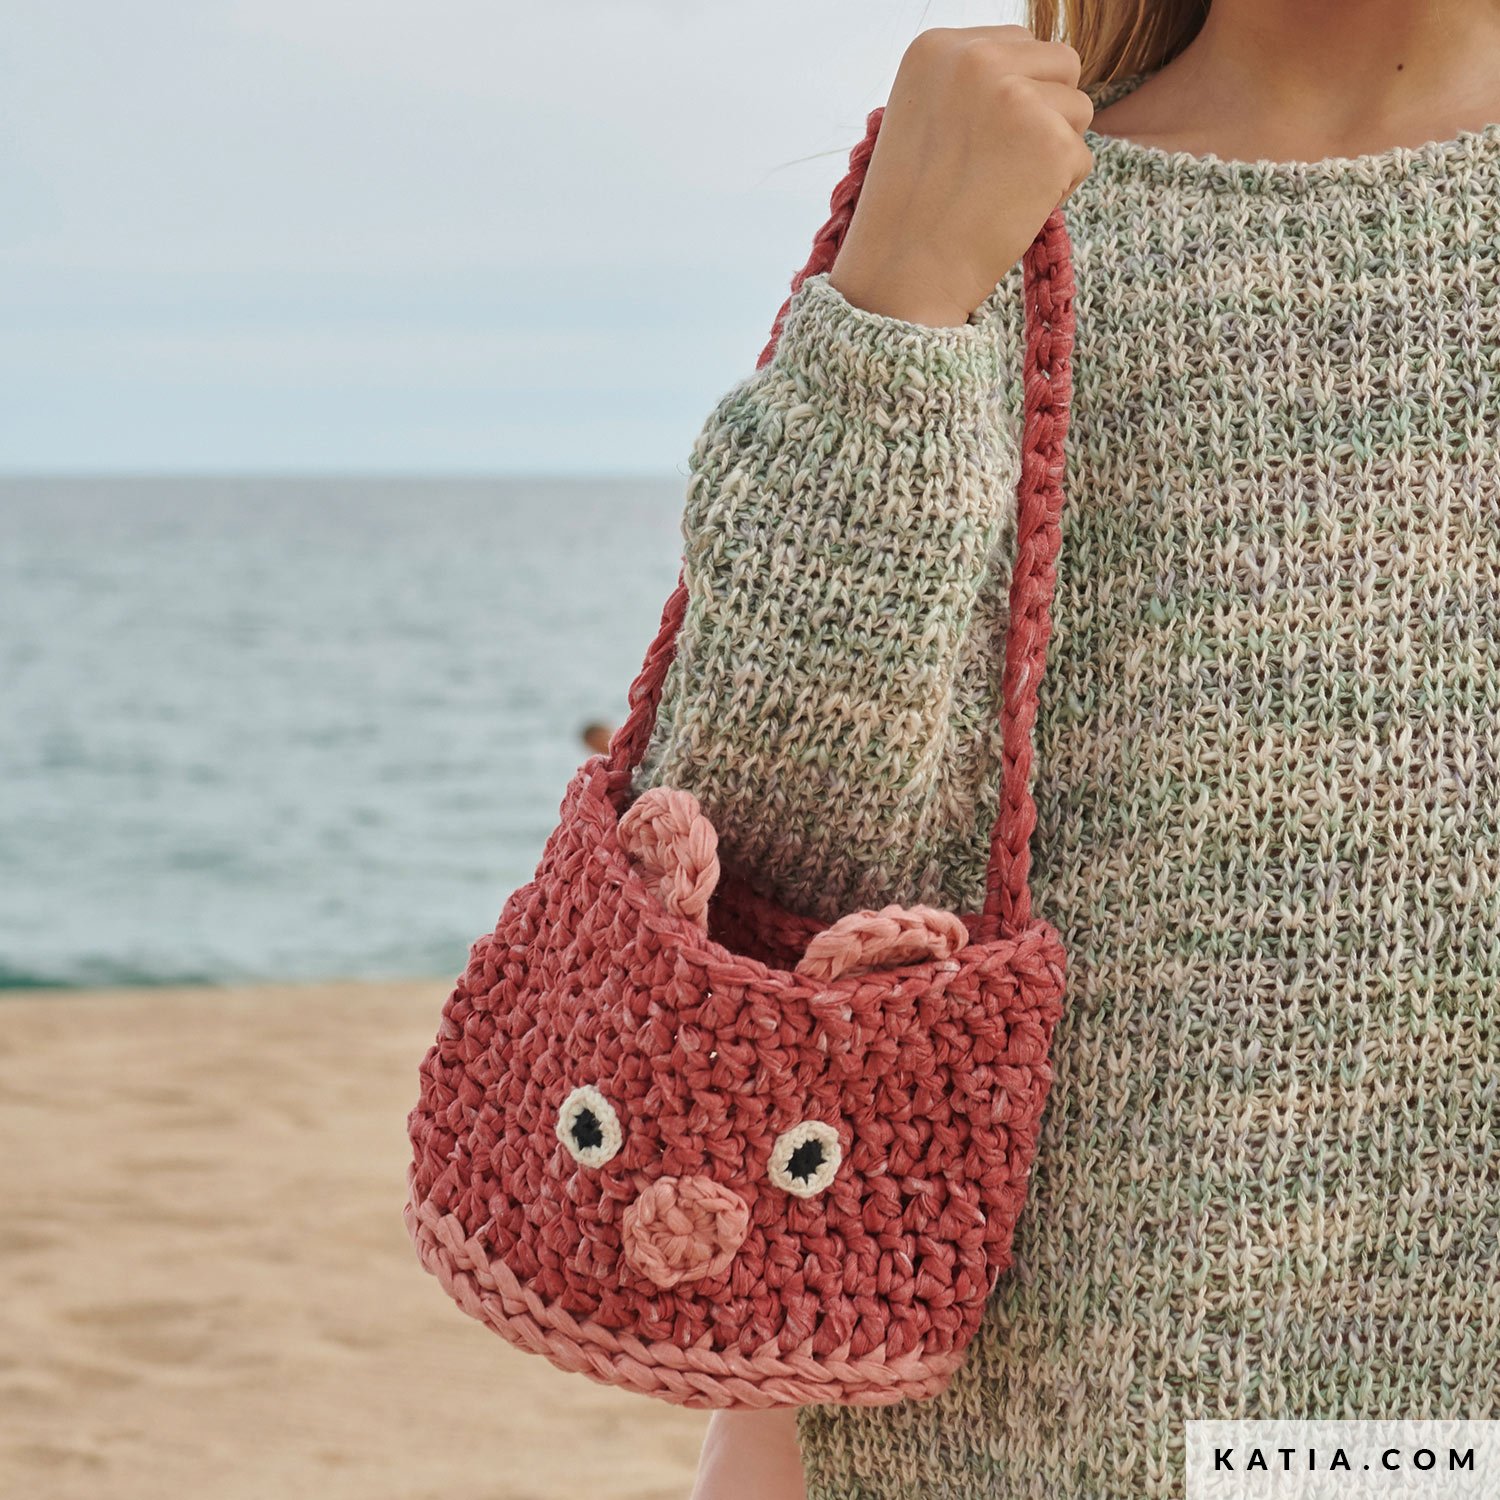 Home-Cooked & Handmade: Cute Handbag for Little Girls